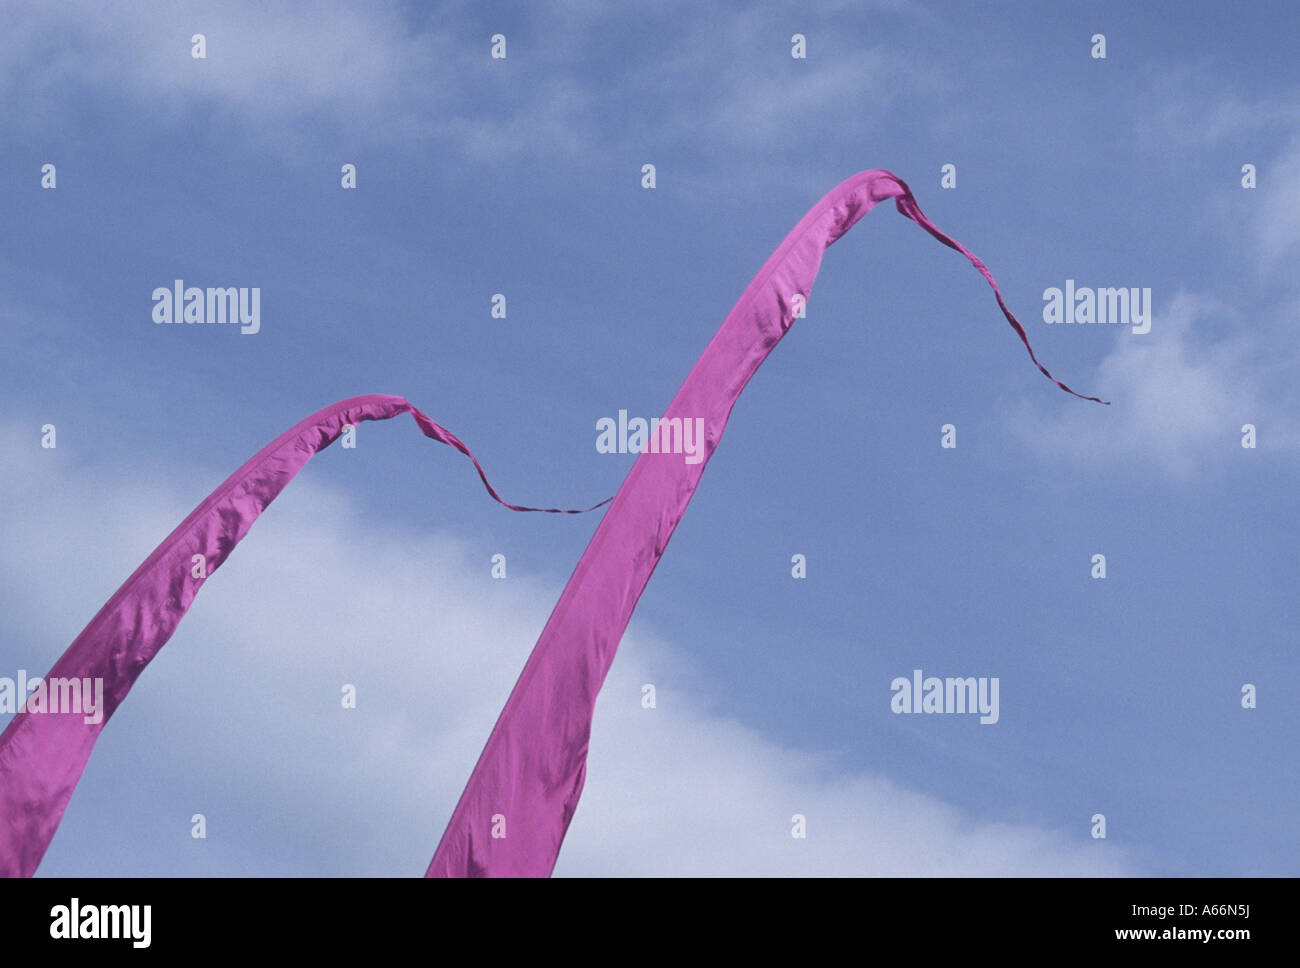 Dos altas banderas rosa triangular agacharse en una fuerte brisa, contra un cielo de verano azul Foto de stock